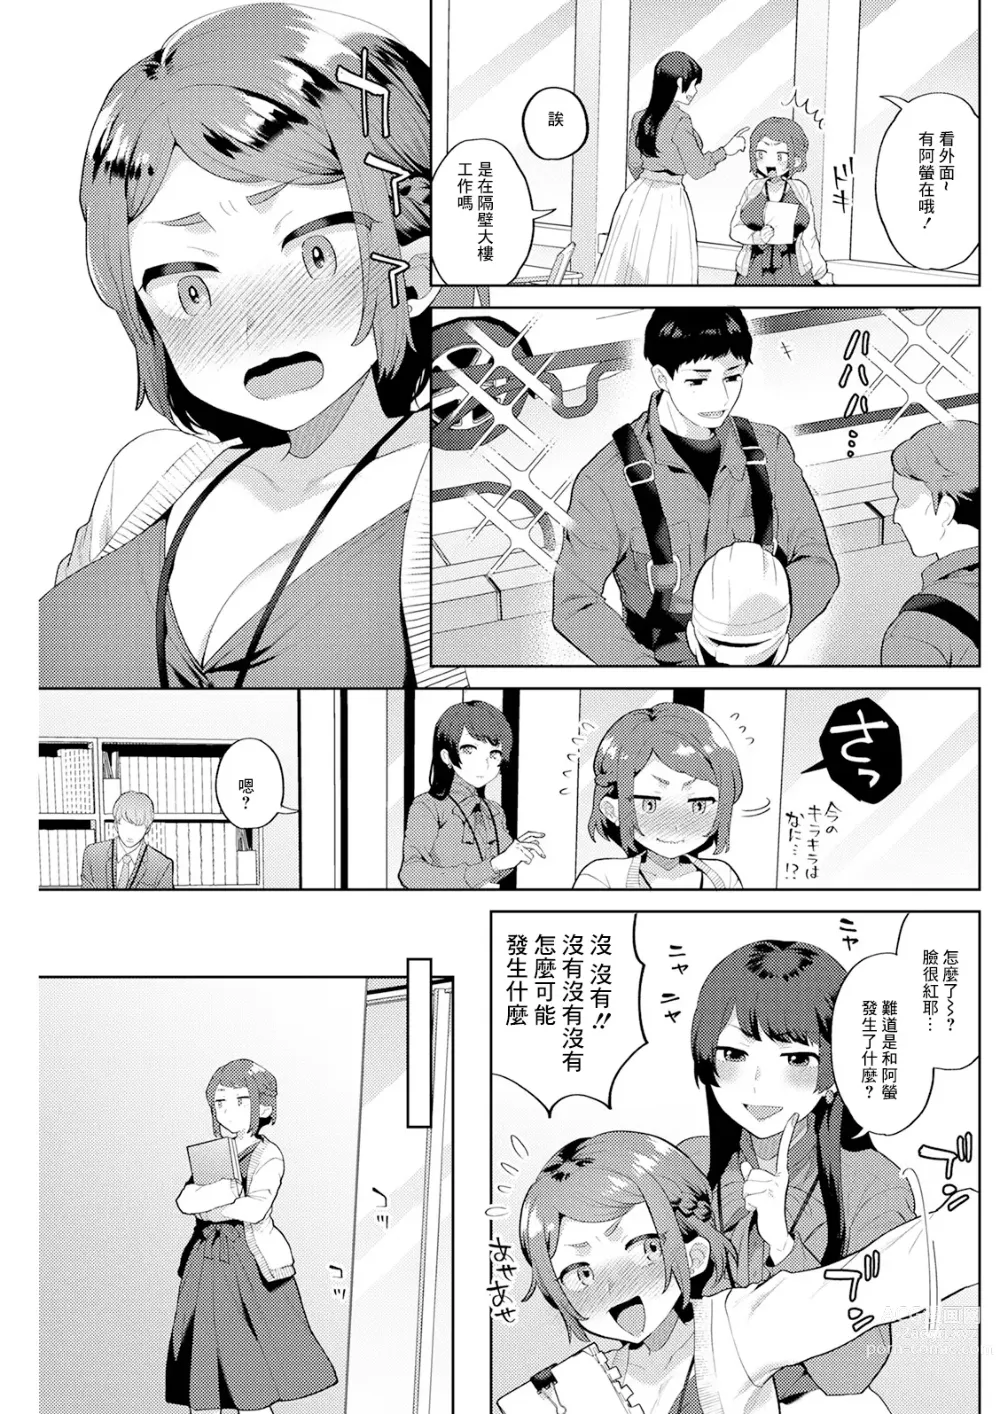 Page 5 of manga スタートライン 後編